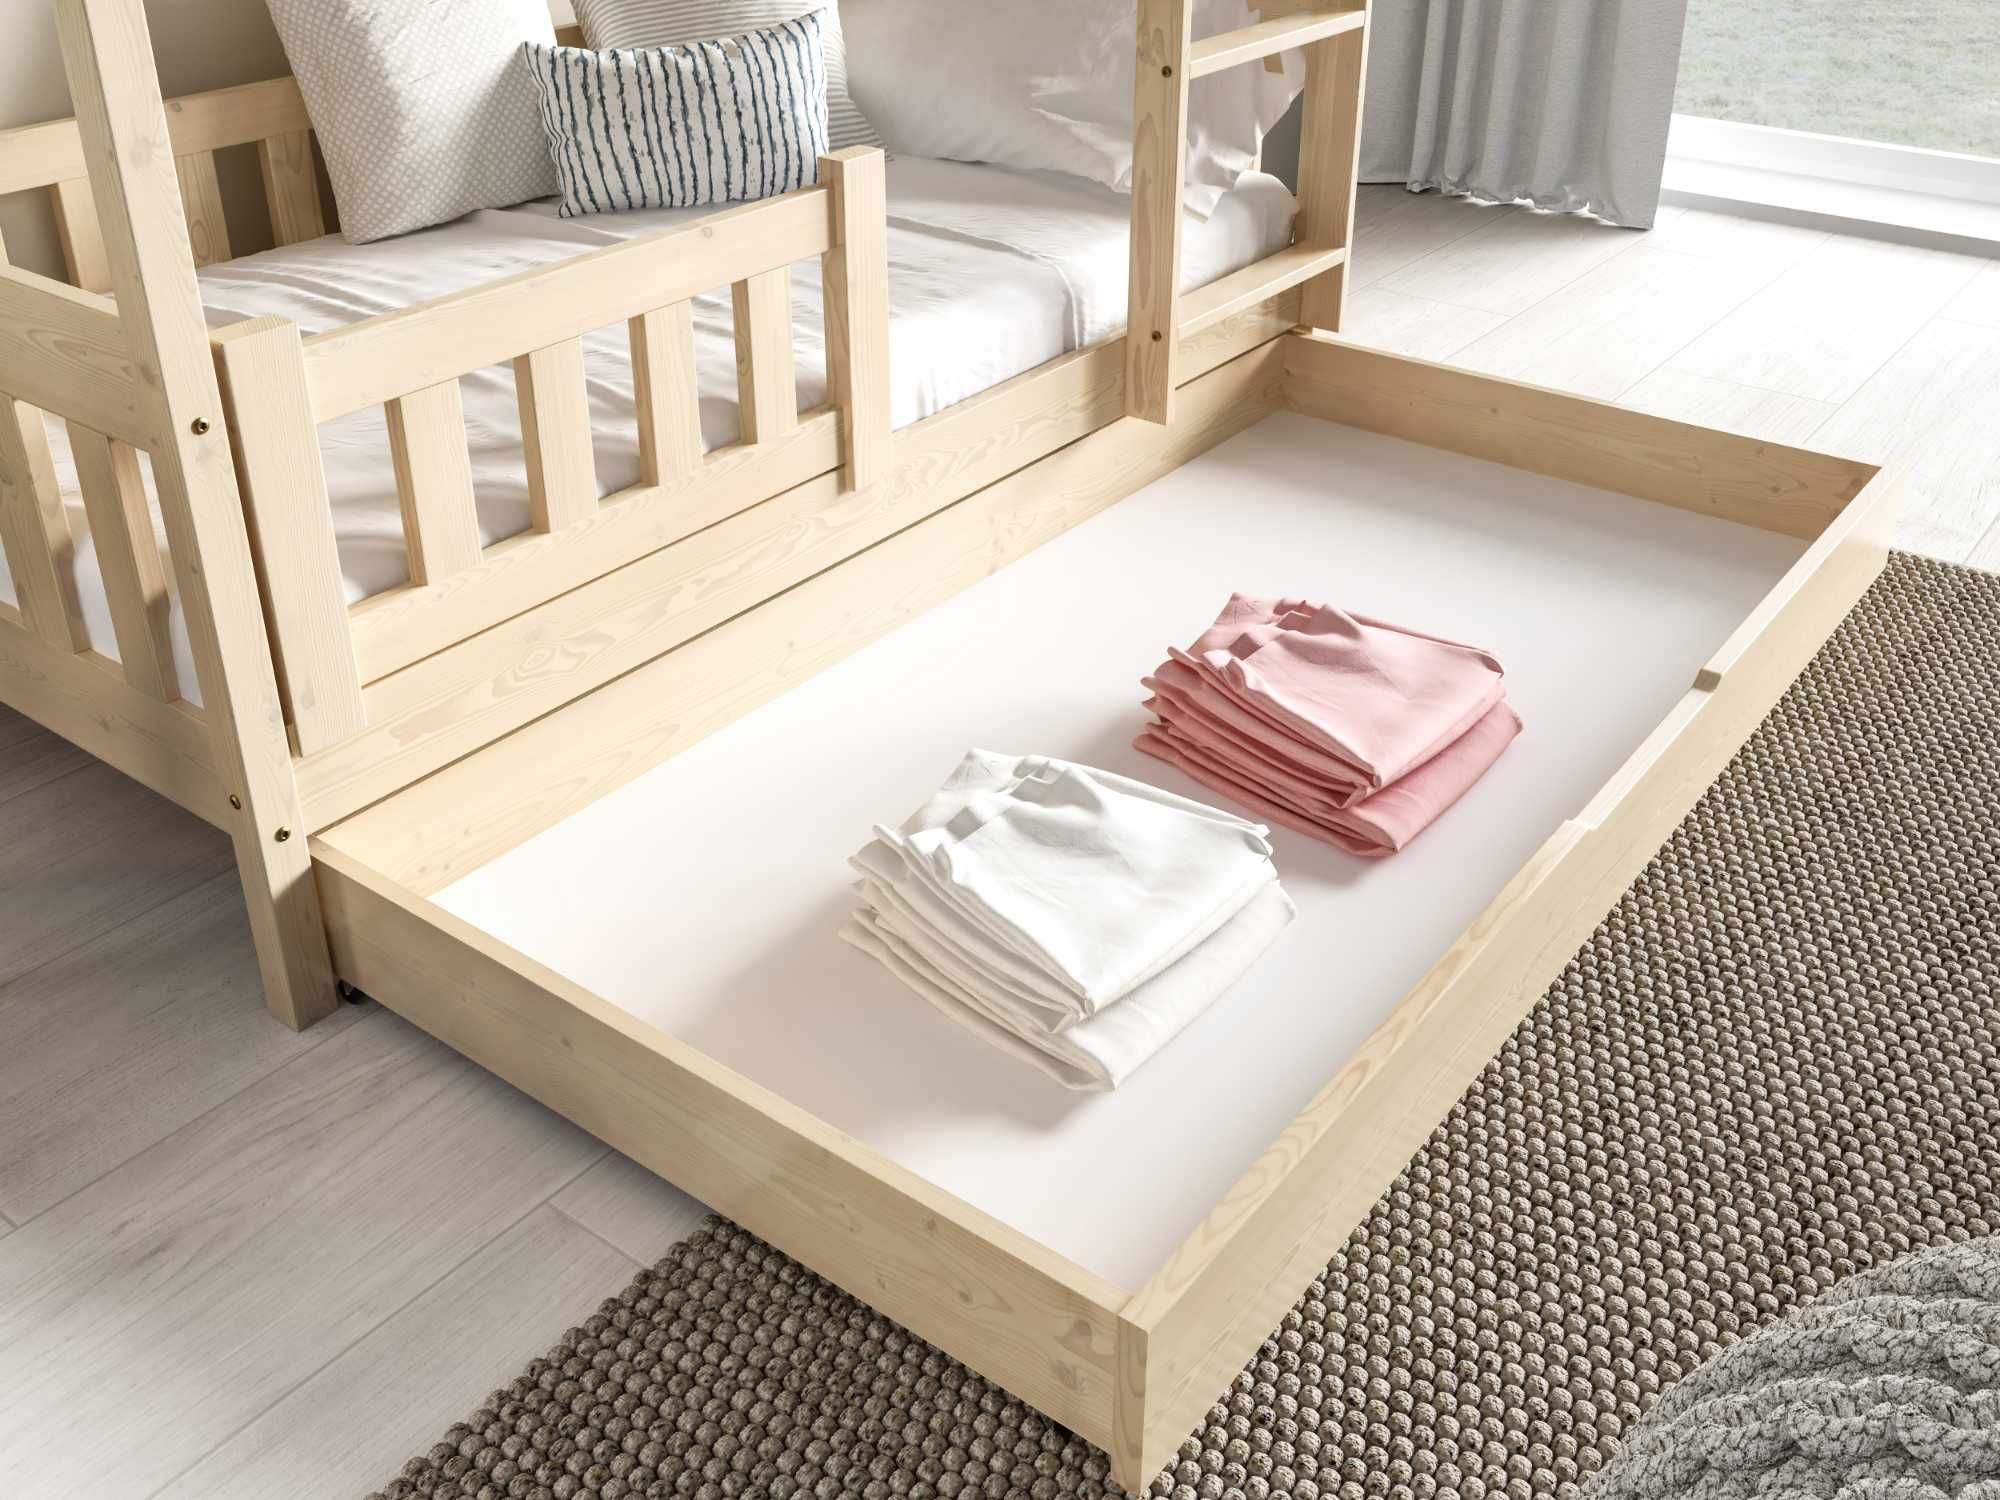 Nowoczesne łóżko piętrowe dla dzieci Domek Zuzia! Materace w komplecie